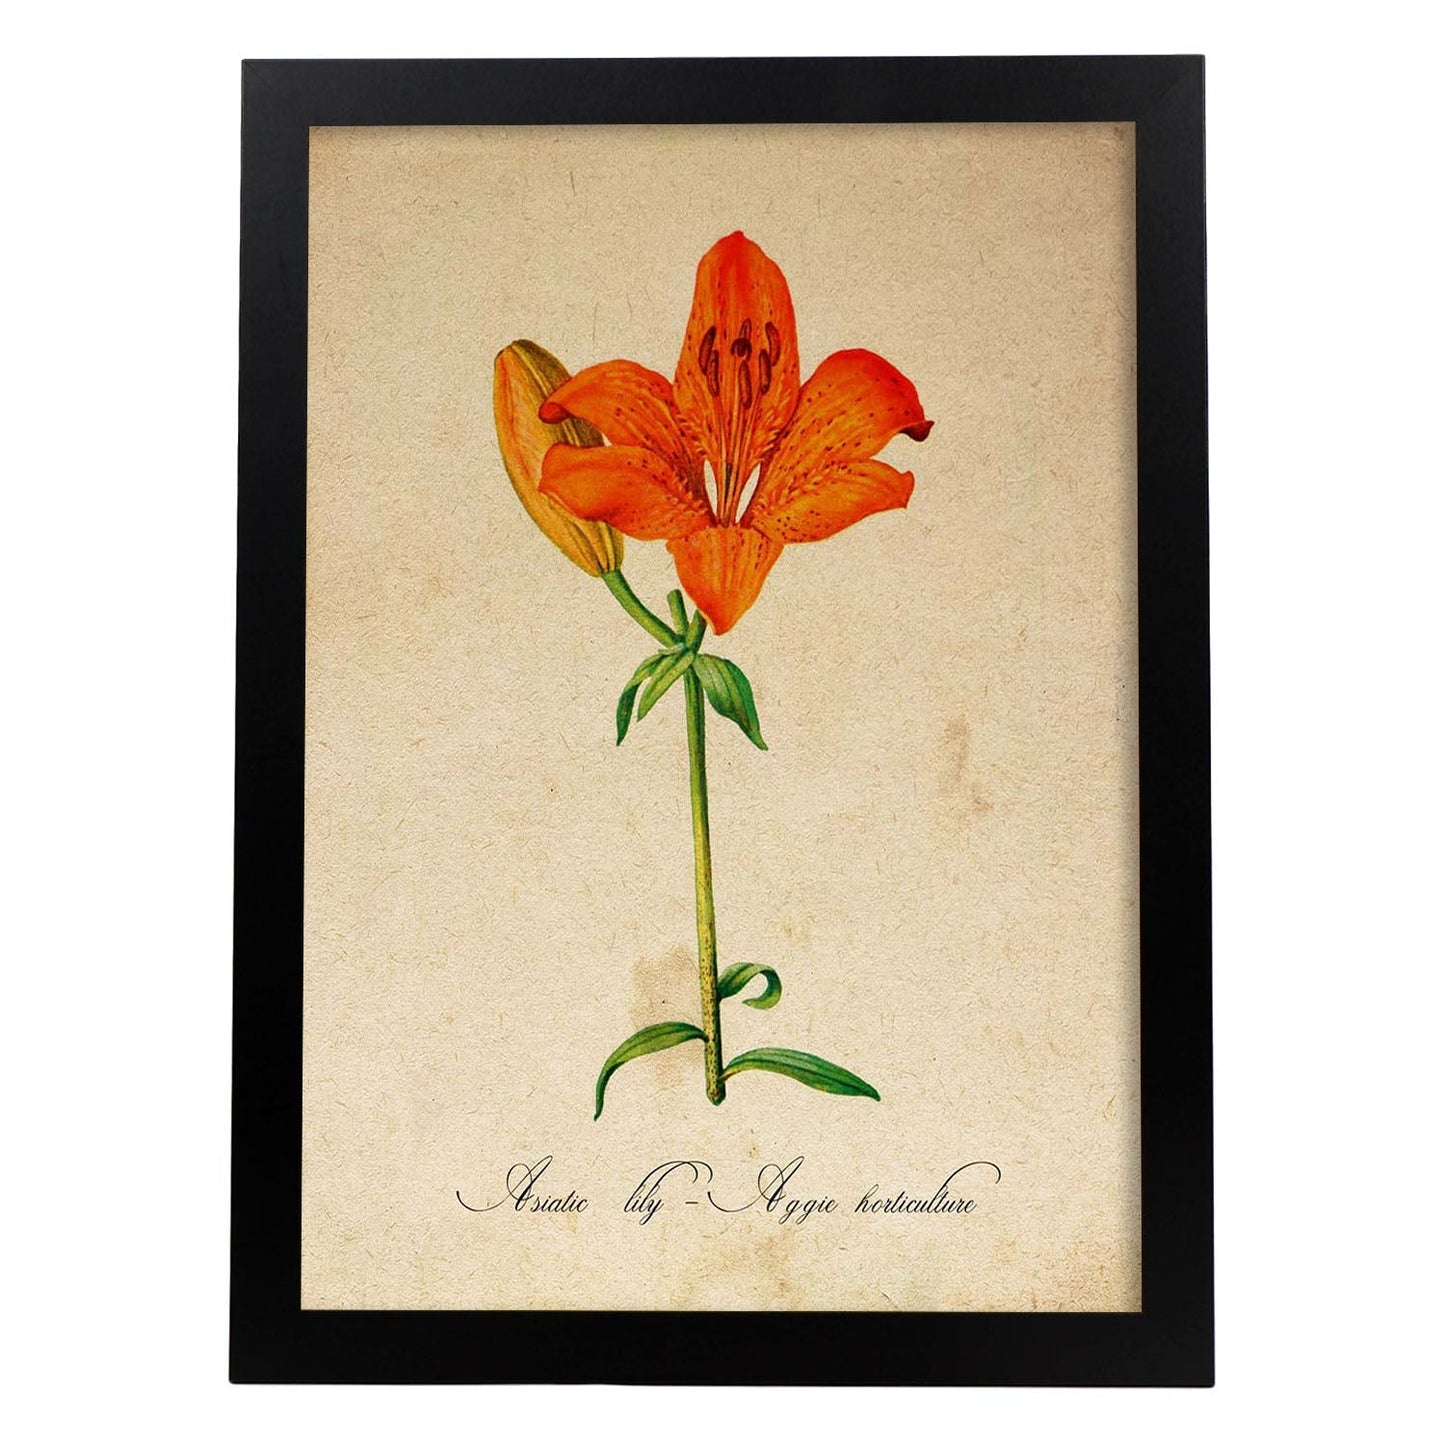 Poster de flores vintage. Lámina Asiatic Lily - Aggie Horticulture con diseño vintage.-Artwork-Nacnic-A4-Marco Negro-Nacnic Estudio SL